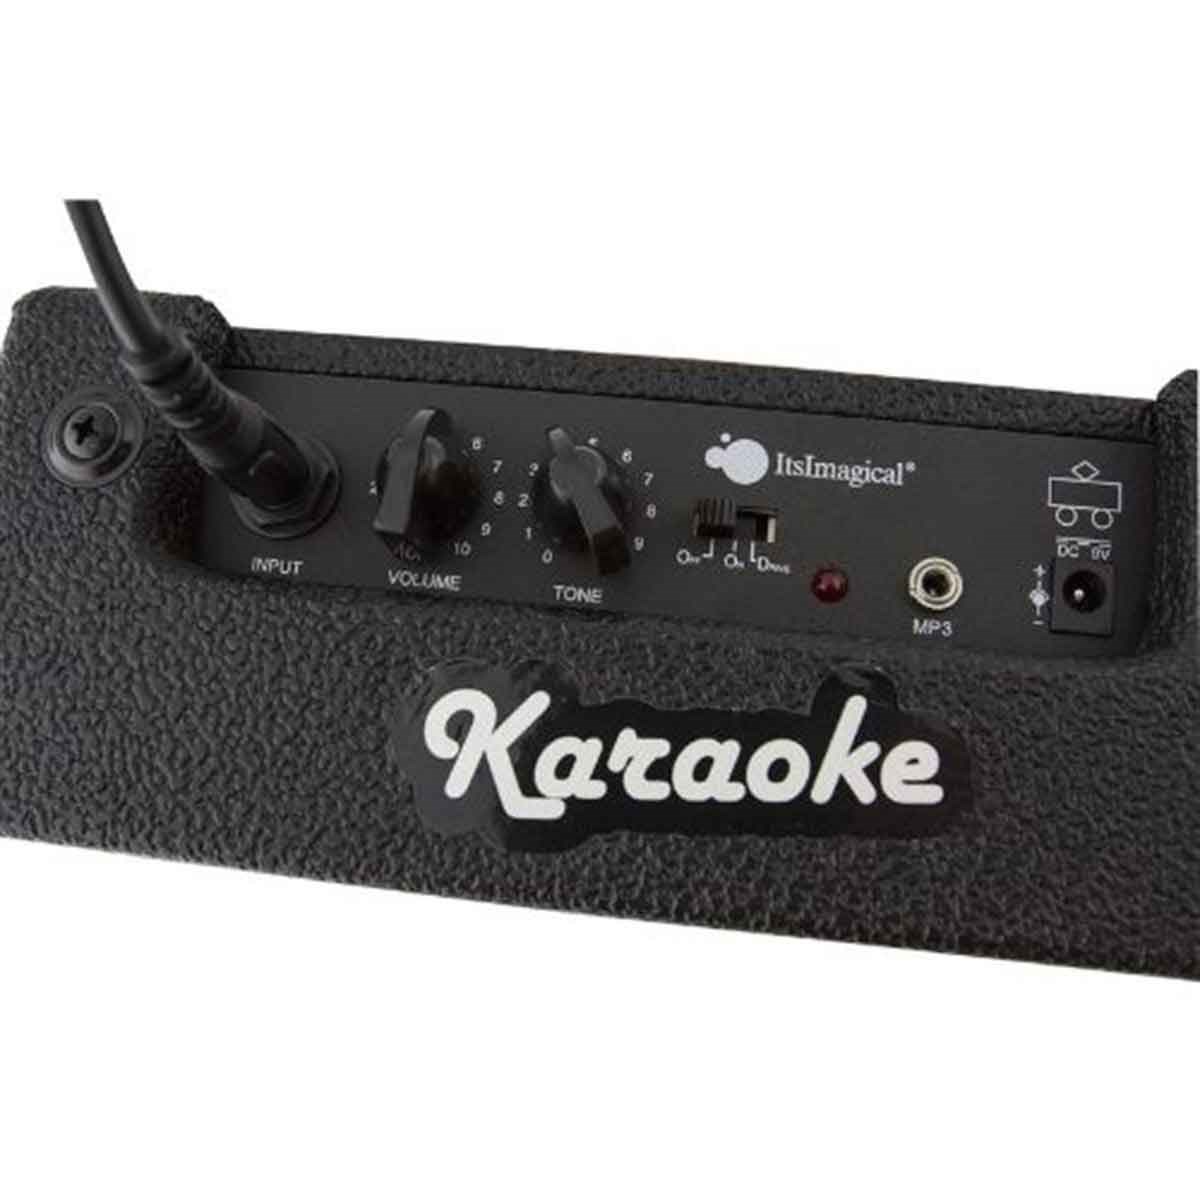 Go Karaoke Now! / Karaoke Seti